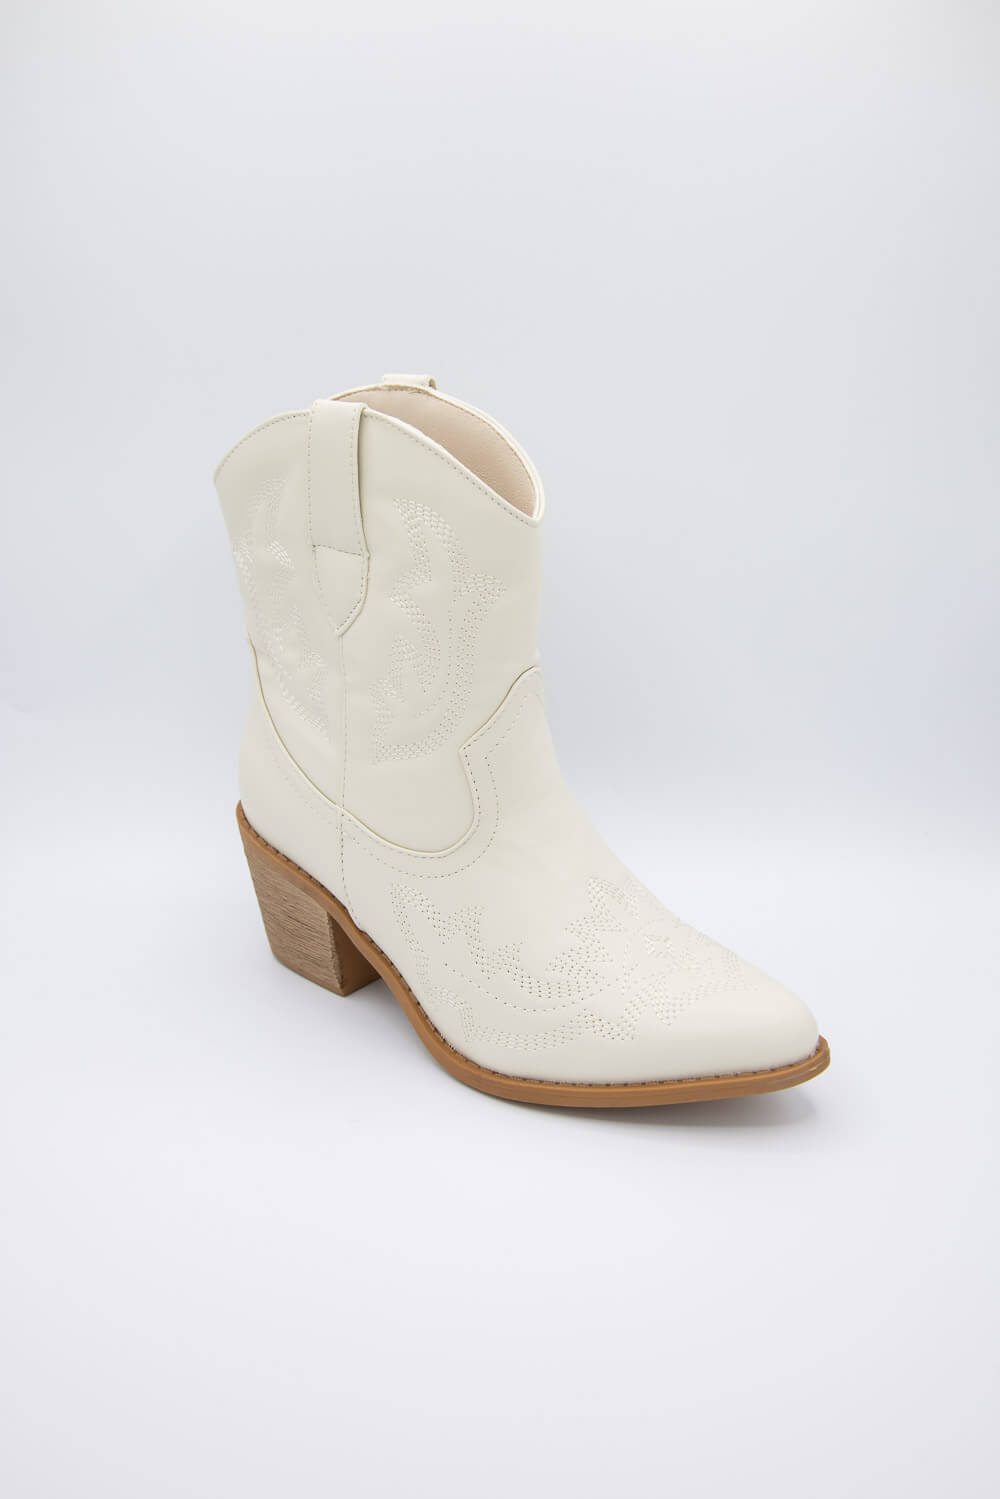 Pierre Dumas Wilder Cowboy Booties for Women in Cream | 89278-105 CREA ...